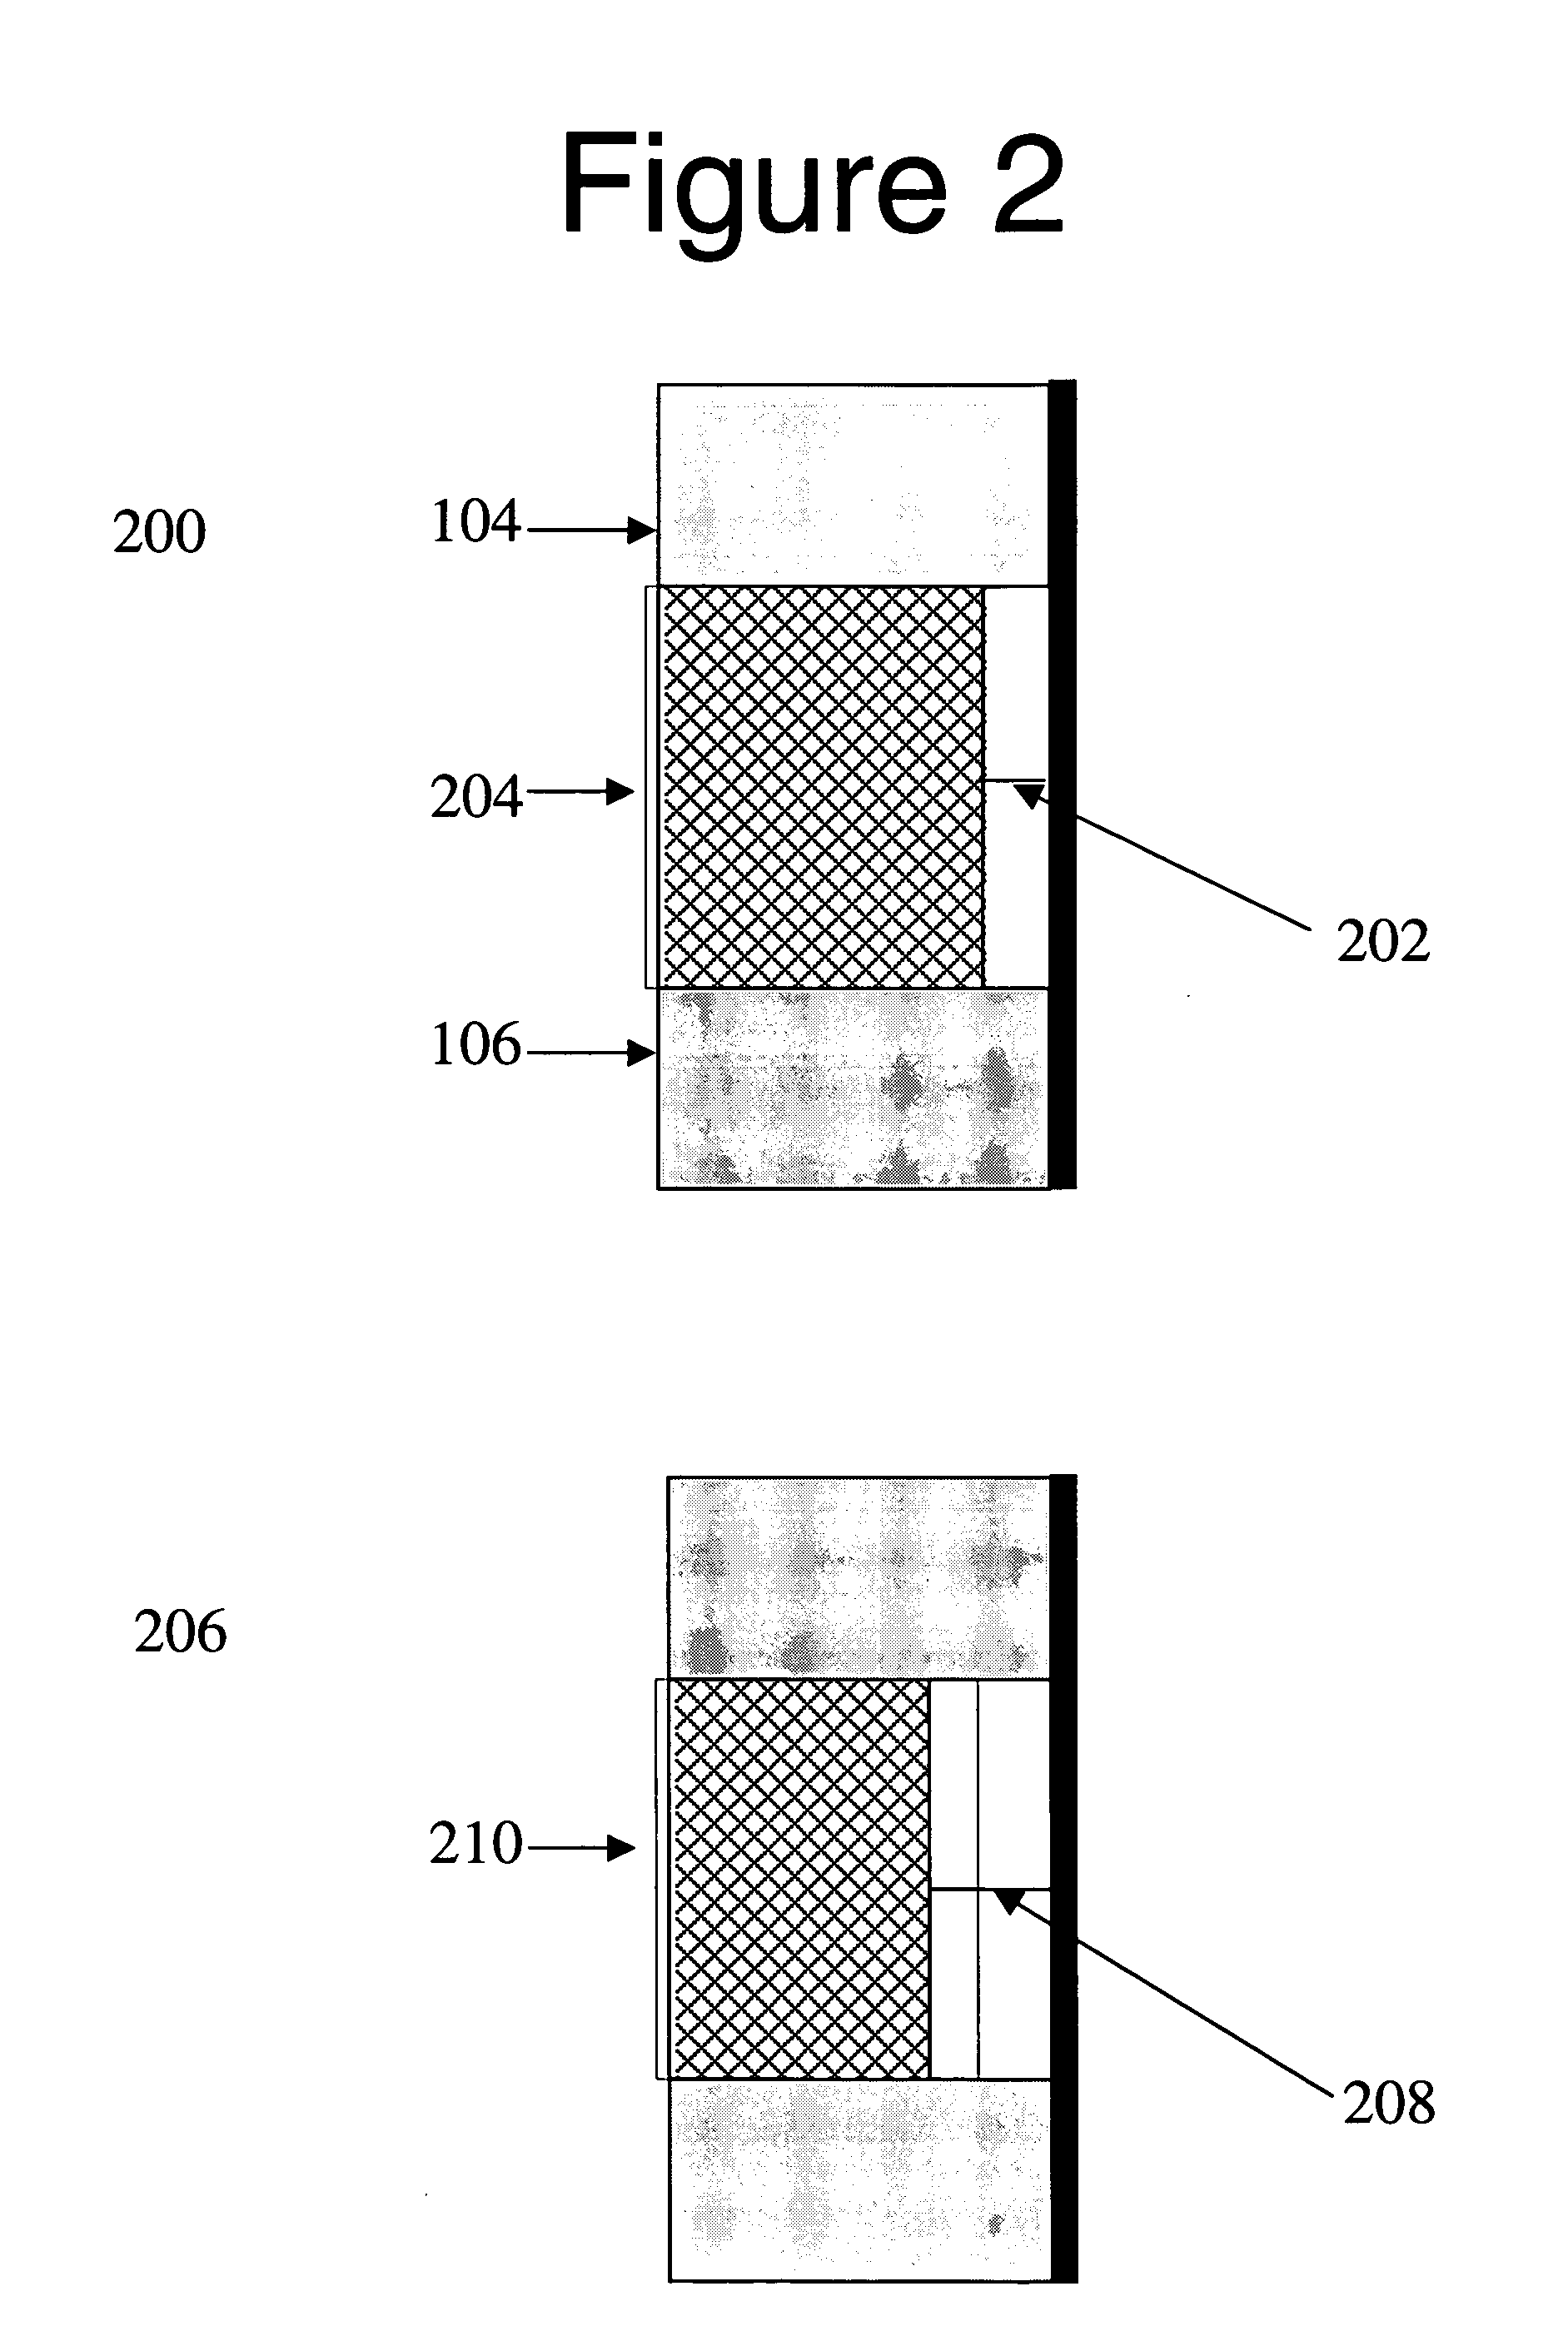 Uses of nanofabric-based electro-mechanical switches